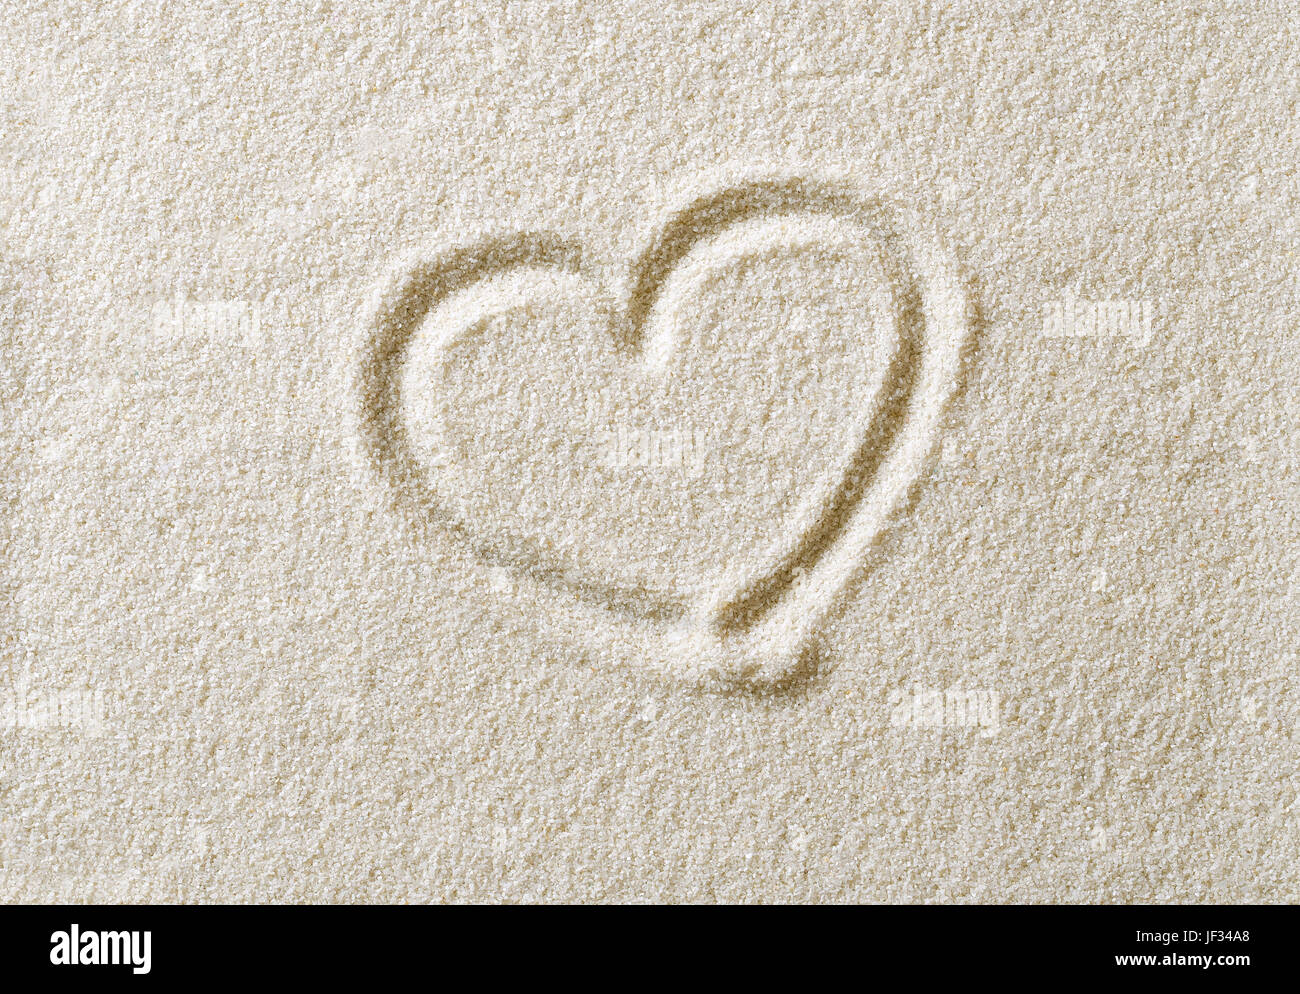 Symbole coeur dessiné en surface du sable. Une forme de cœur, à exprimer des émotions comme l'idéogramme de l'amour romantique. Métaphoriques. Macro photo close up à partir de ci-dessus. Banque D'Images